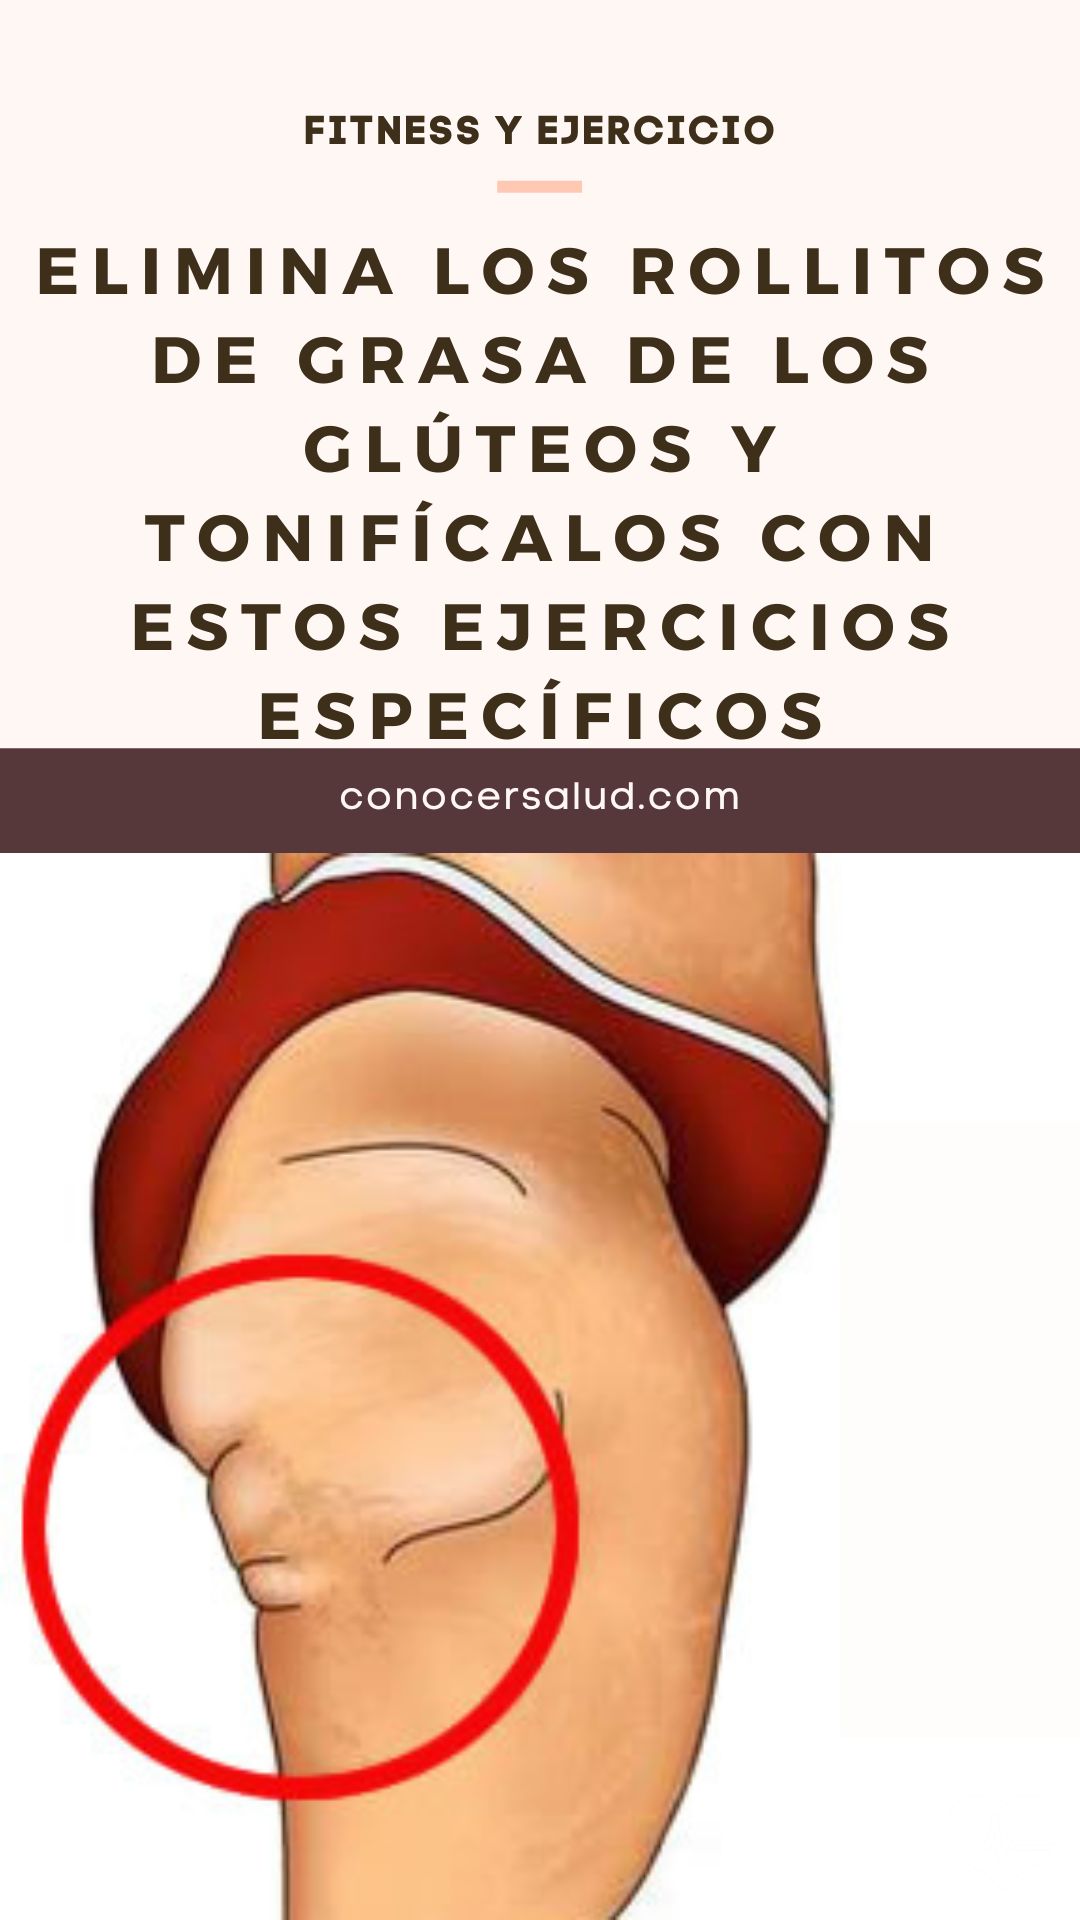 Elimina los rollitos de grasa de los glúteos y tonifícalos con estos ejercicios específicos